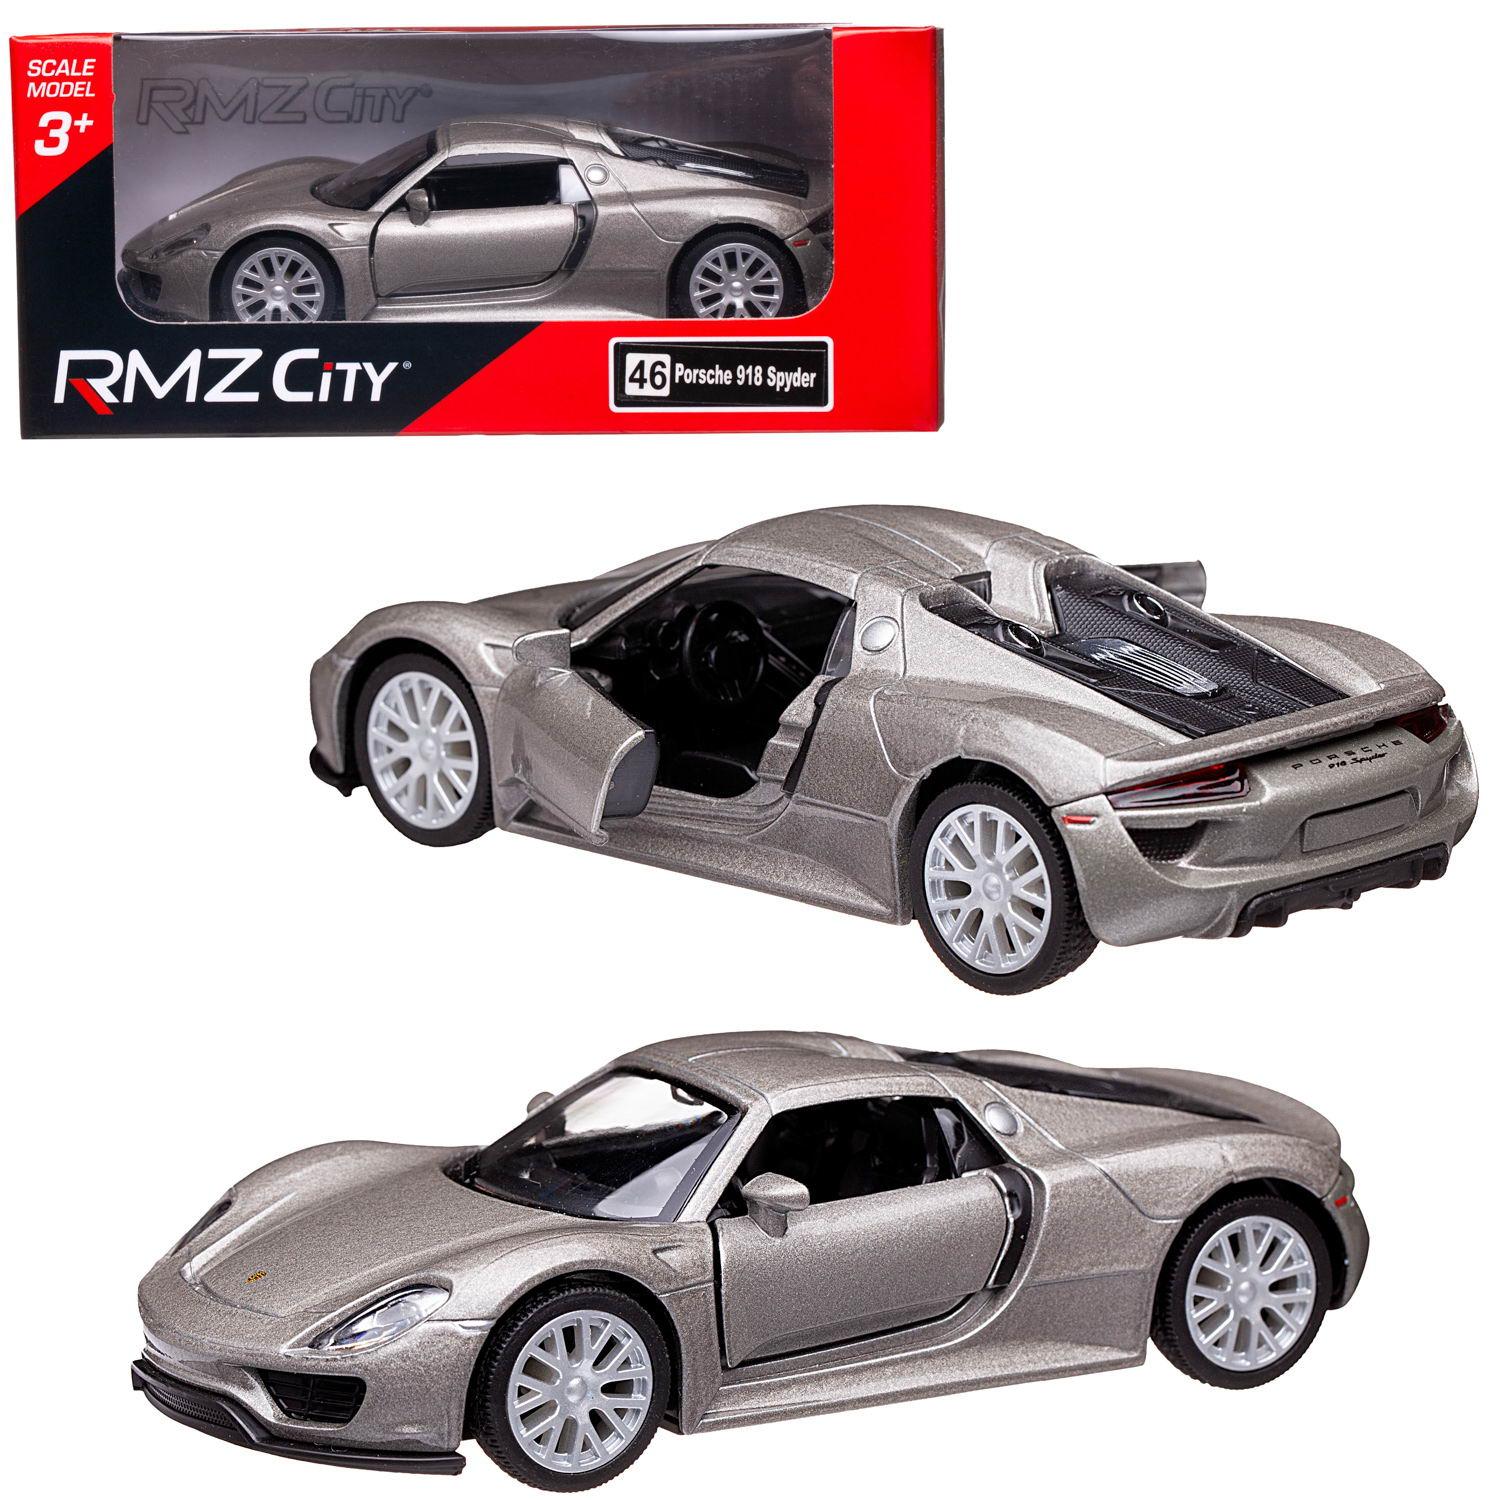 Машина металлическая RMZ City 1:32 Porsche 918 Spyder,серебристый цвет, двери открываются